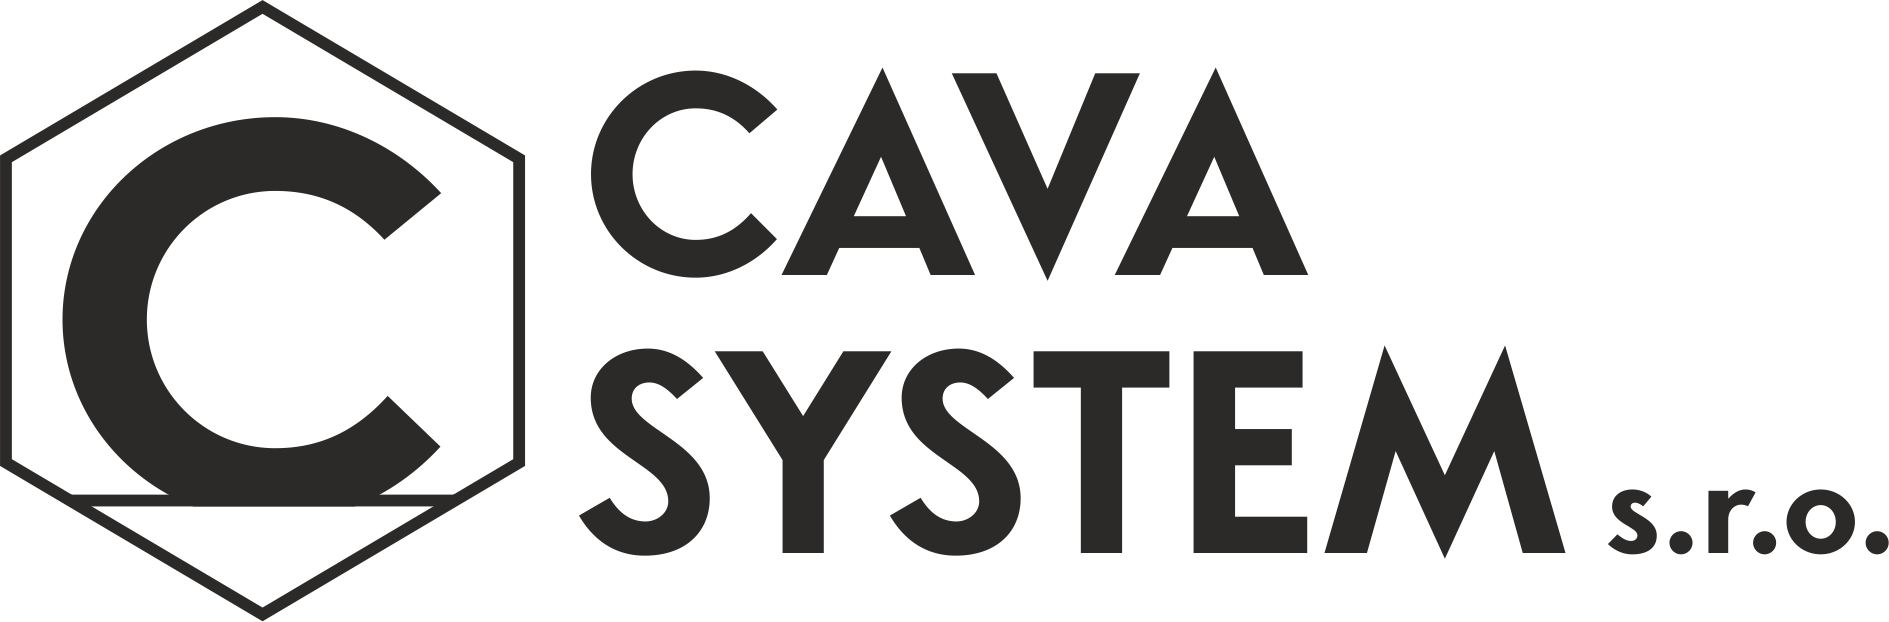 CAVA SYSTEM s.r.o.